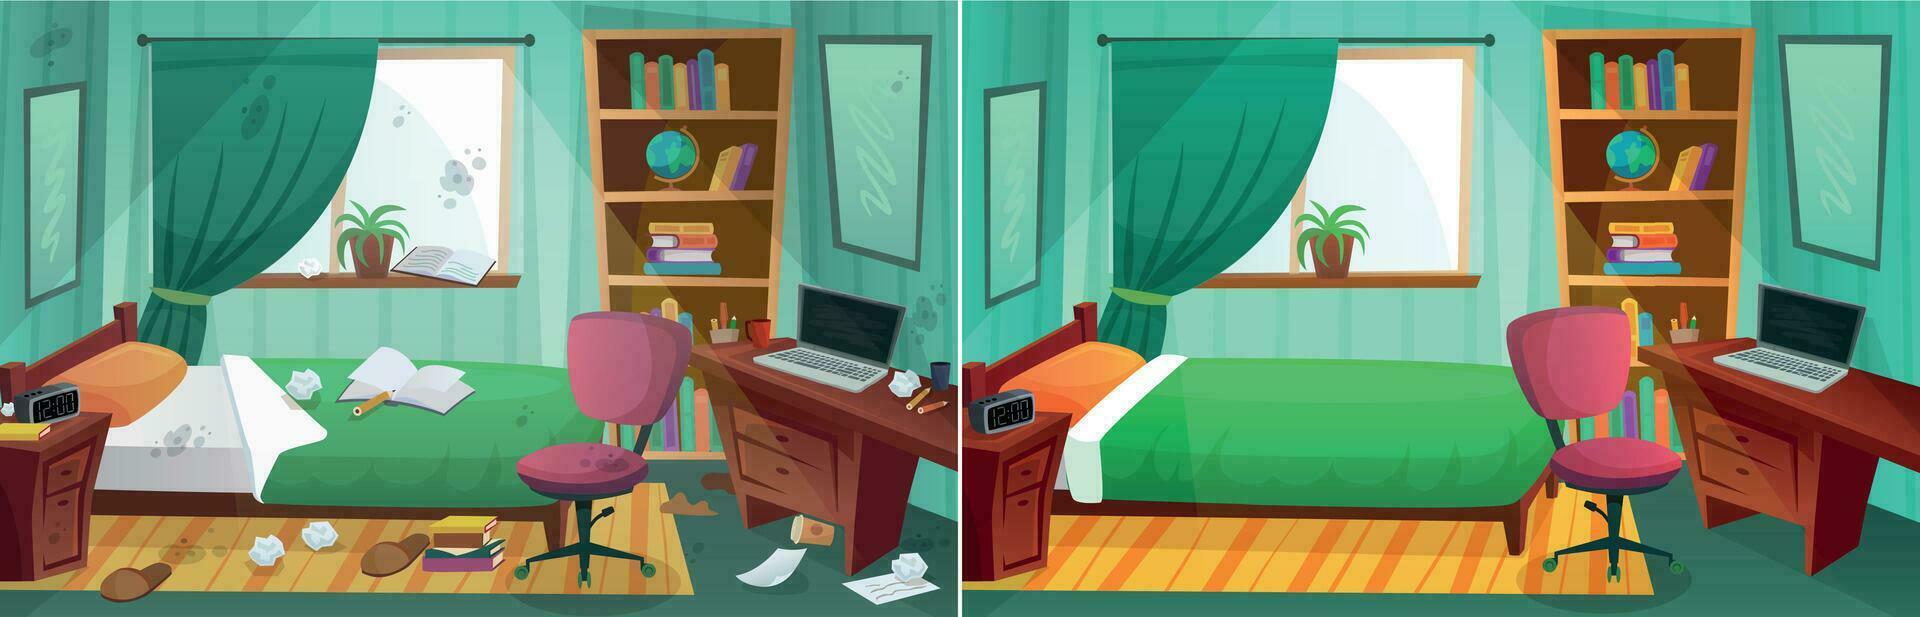 habitación antes de y después limpieza. comparación de sucio dormitorio y limpiar niño dormitorio. hogar después noticias Servicio vector